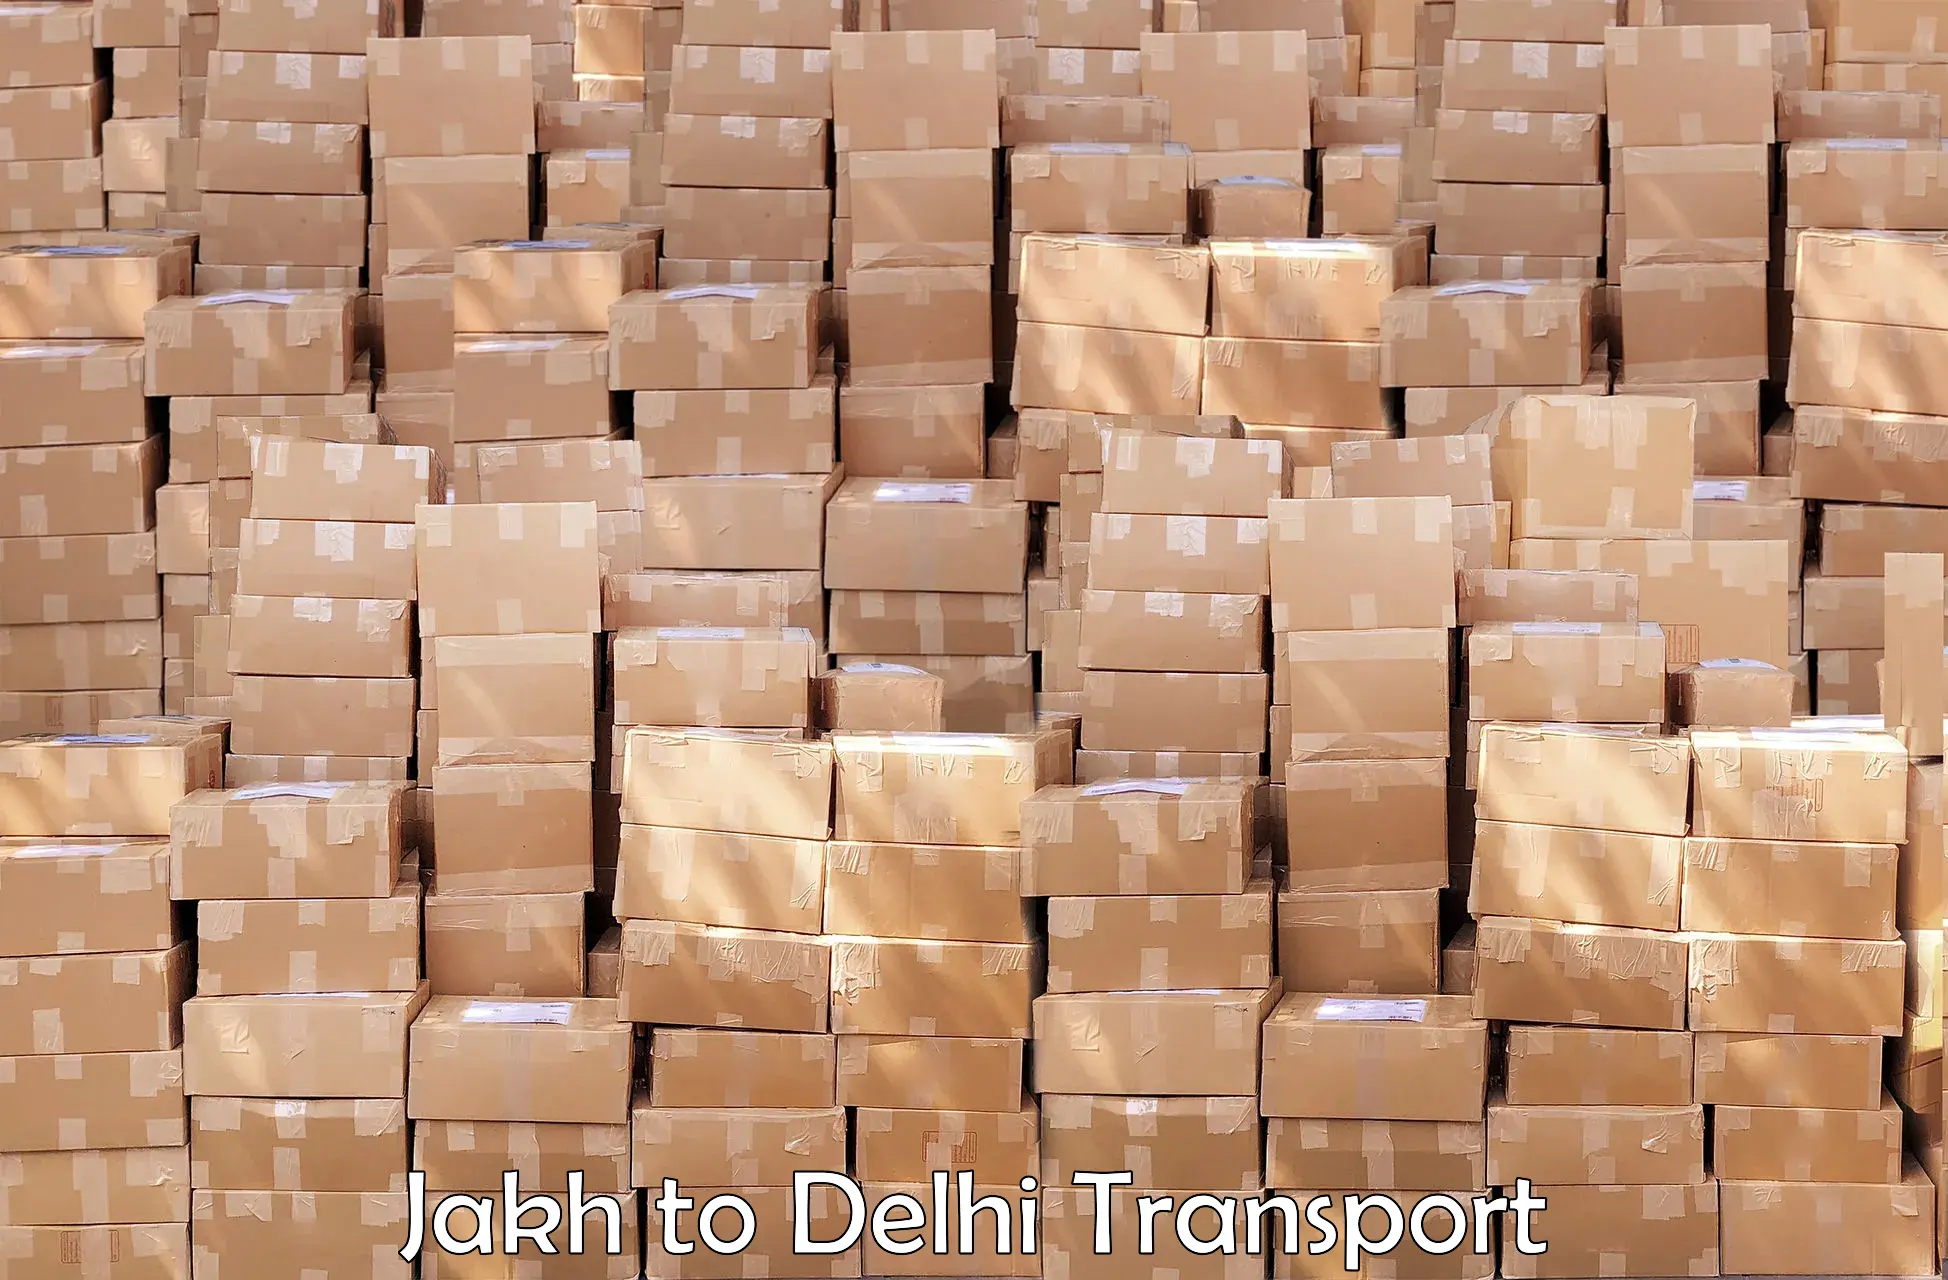 Furniture transport service Jakh to East Delhi